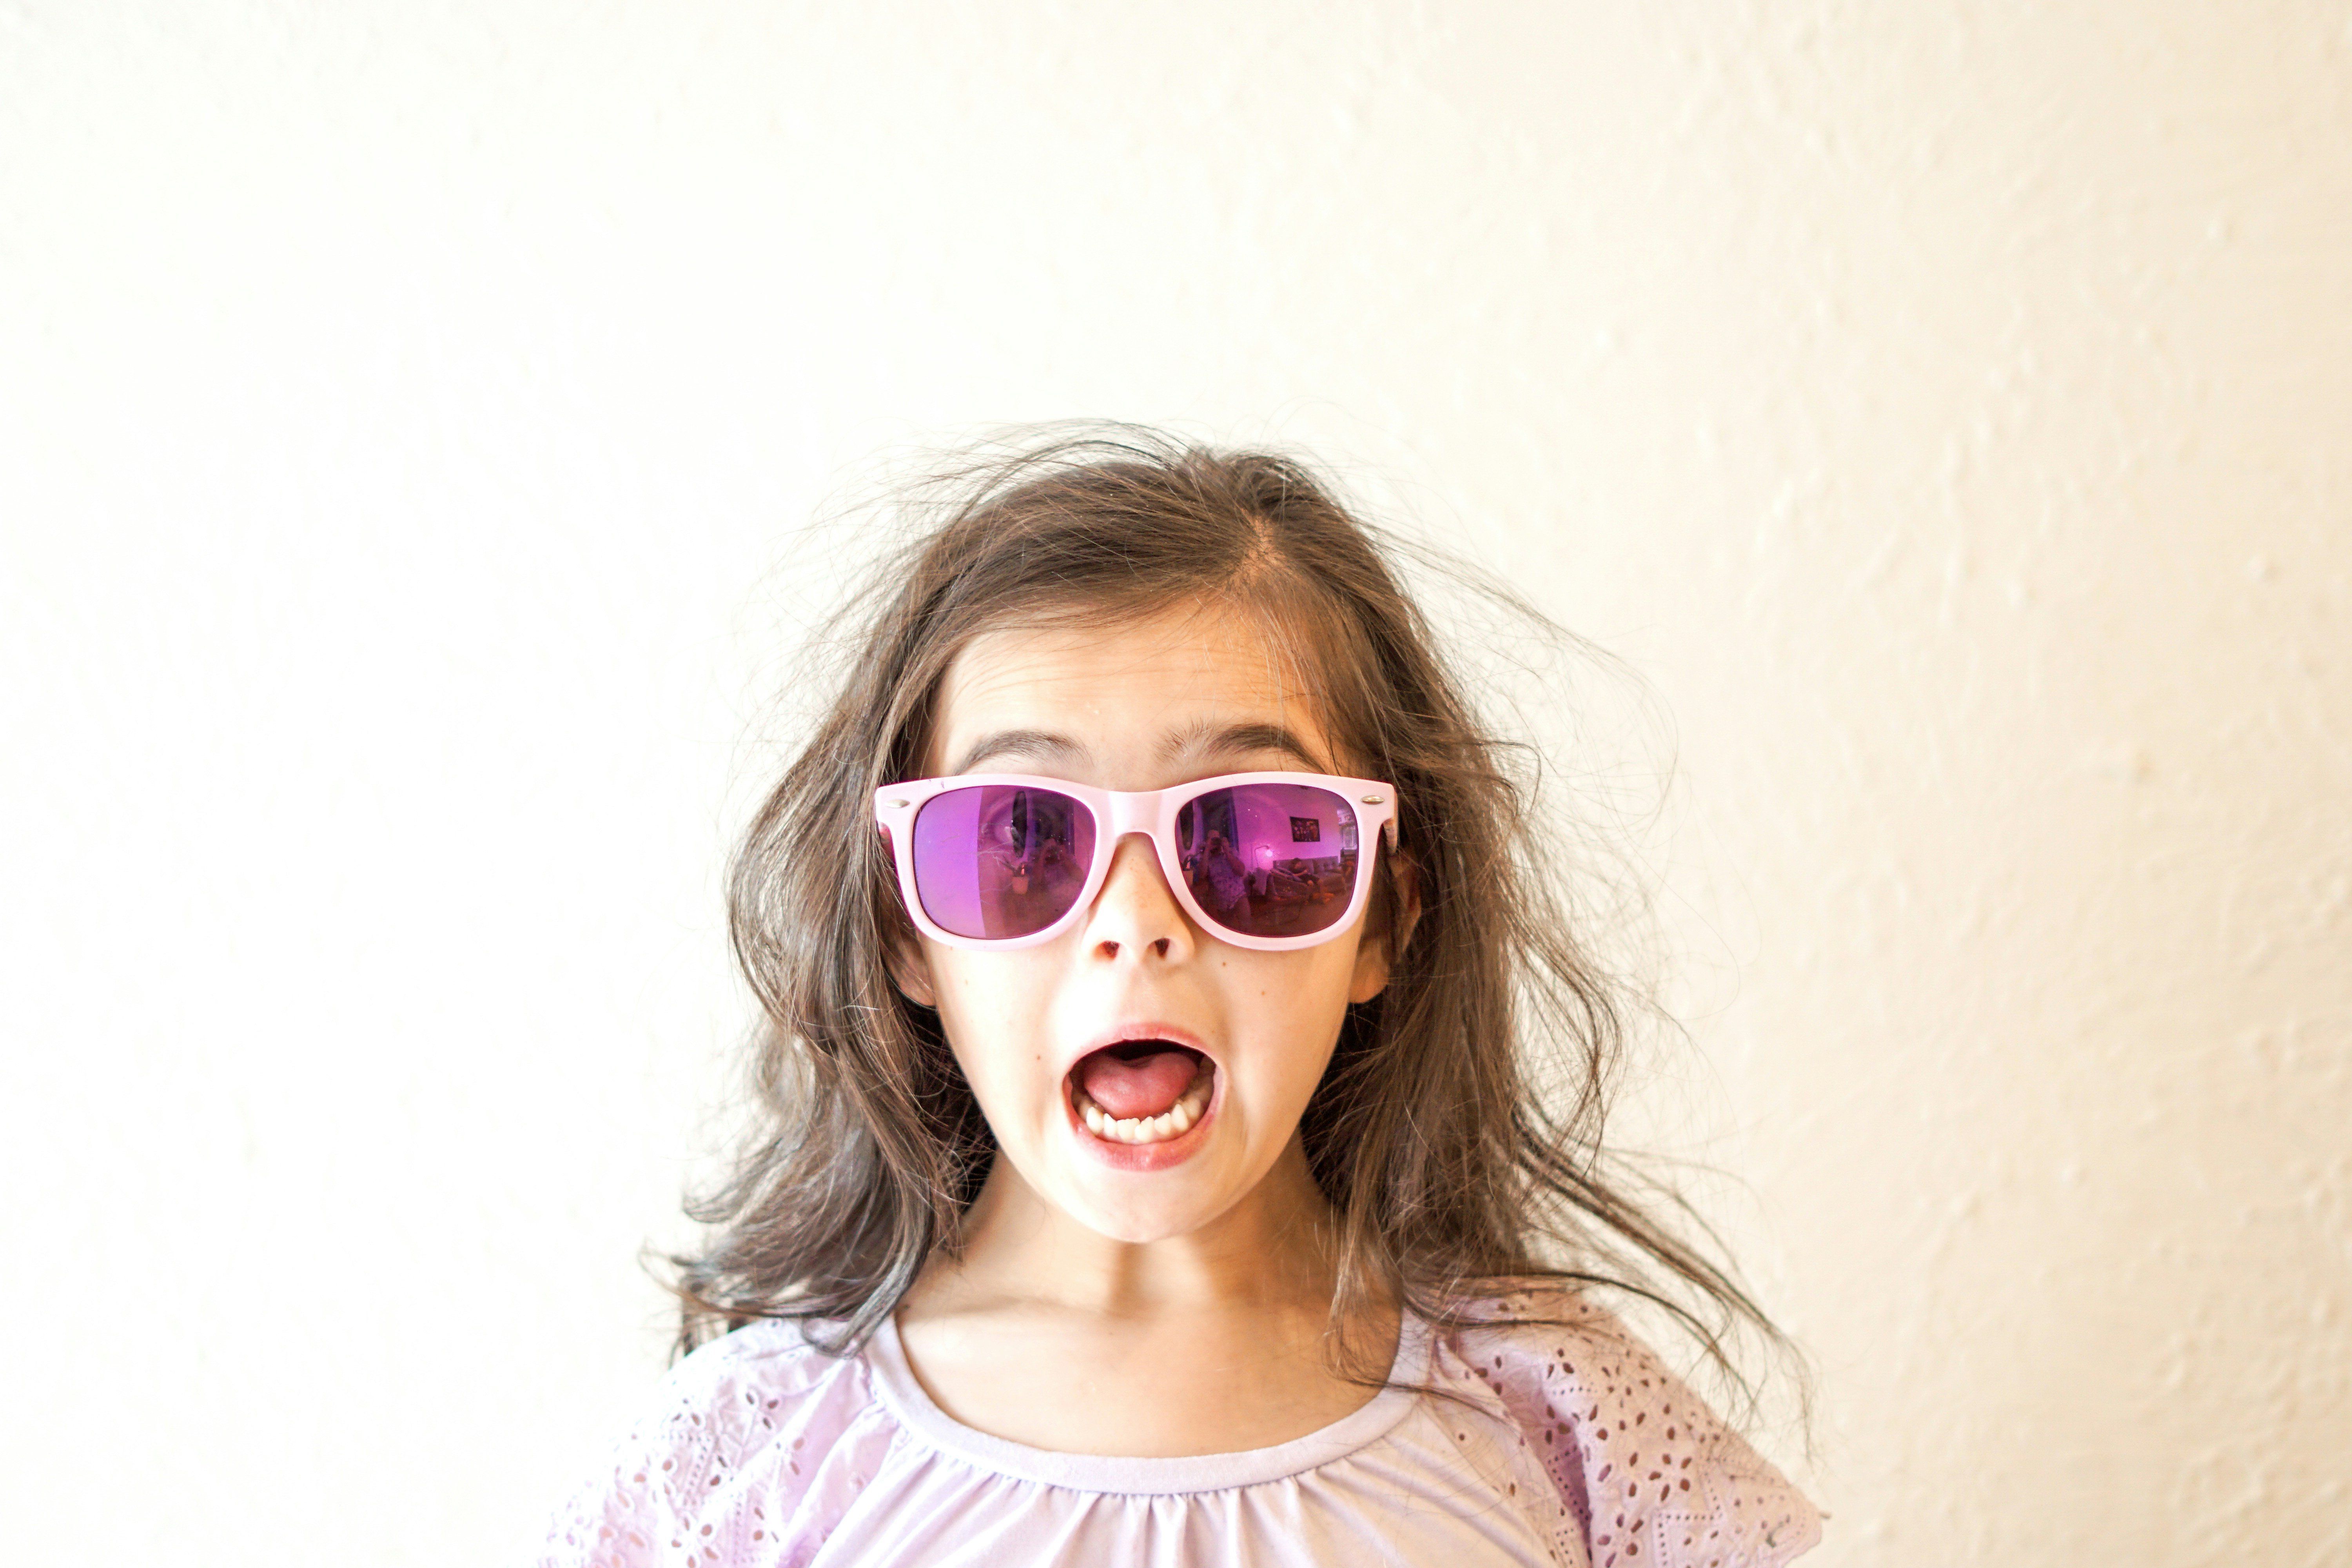 Tátott szájjal csodálkozó napszemüveges kislány